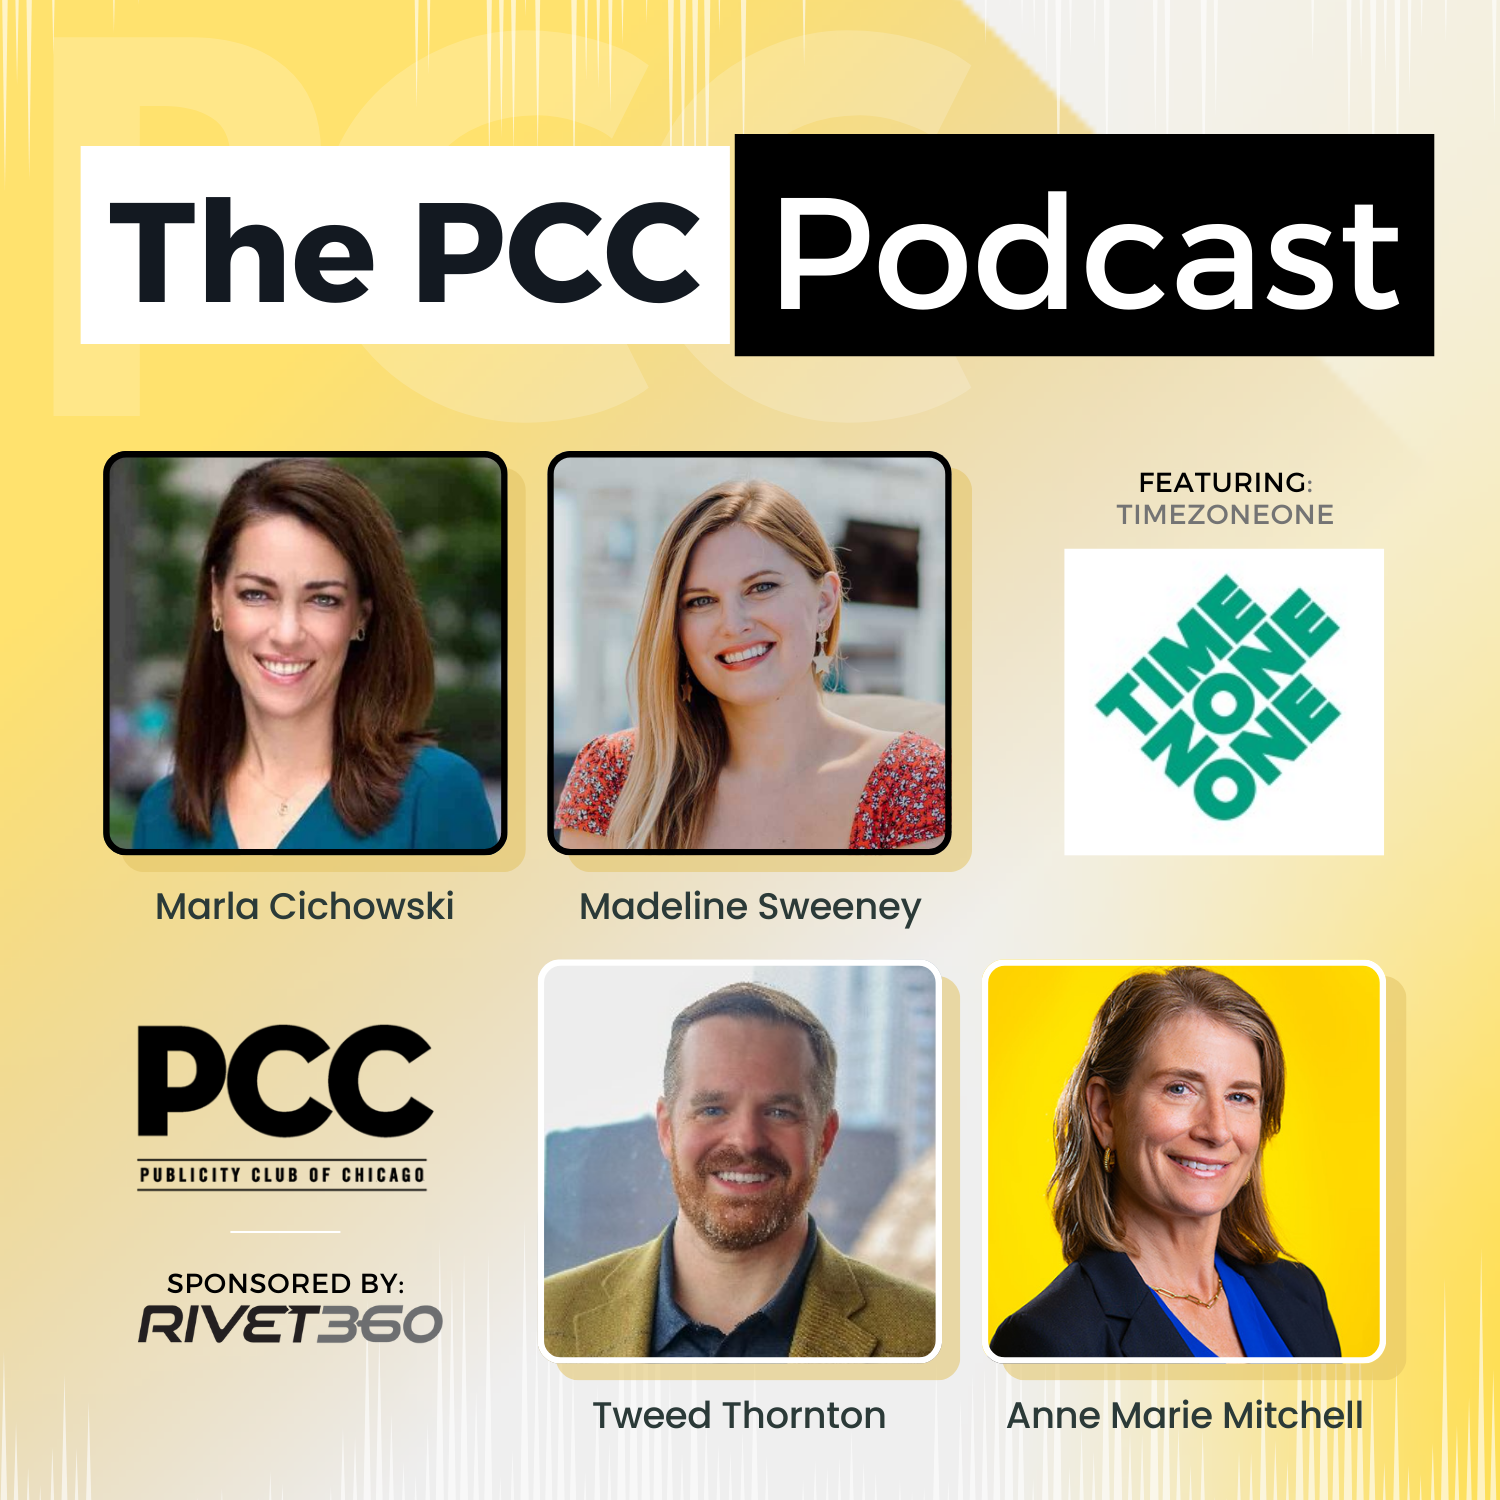 PCC Podcast: TimeZoneOne Episode